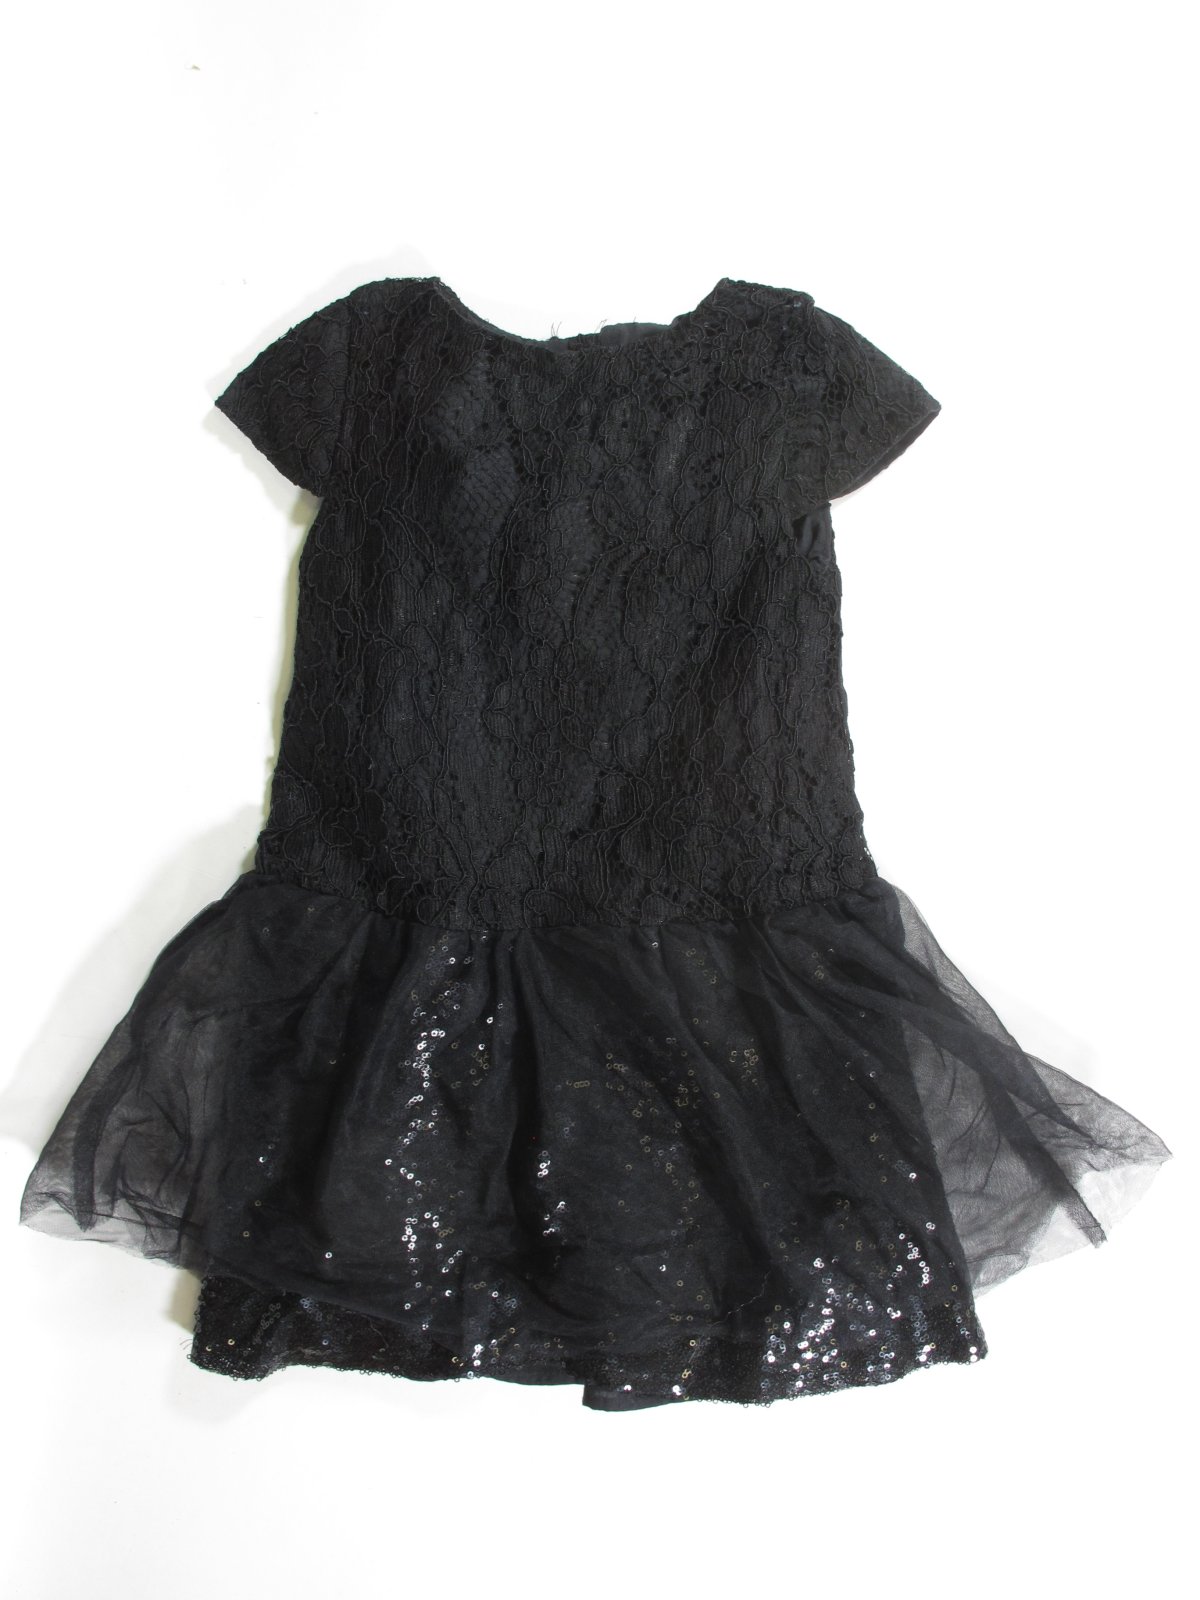 Šaty pro holky se vzorem  černé secondhand